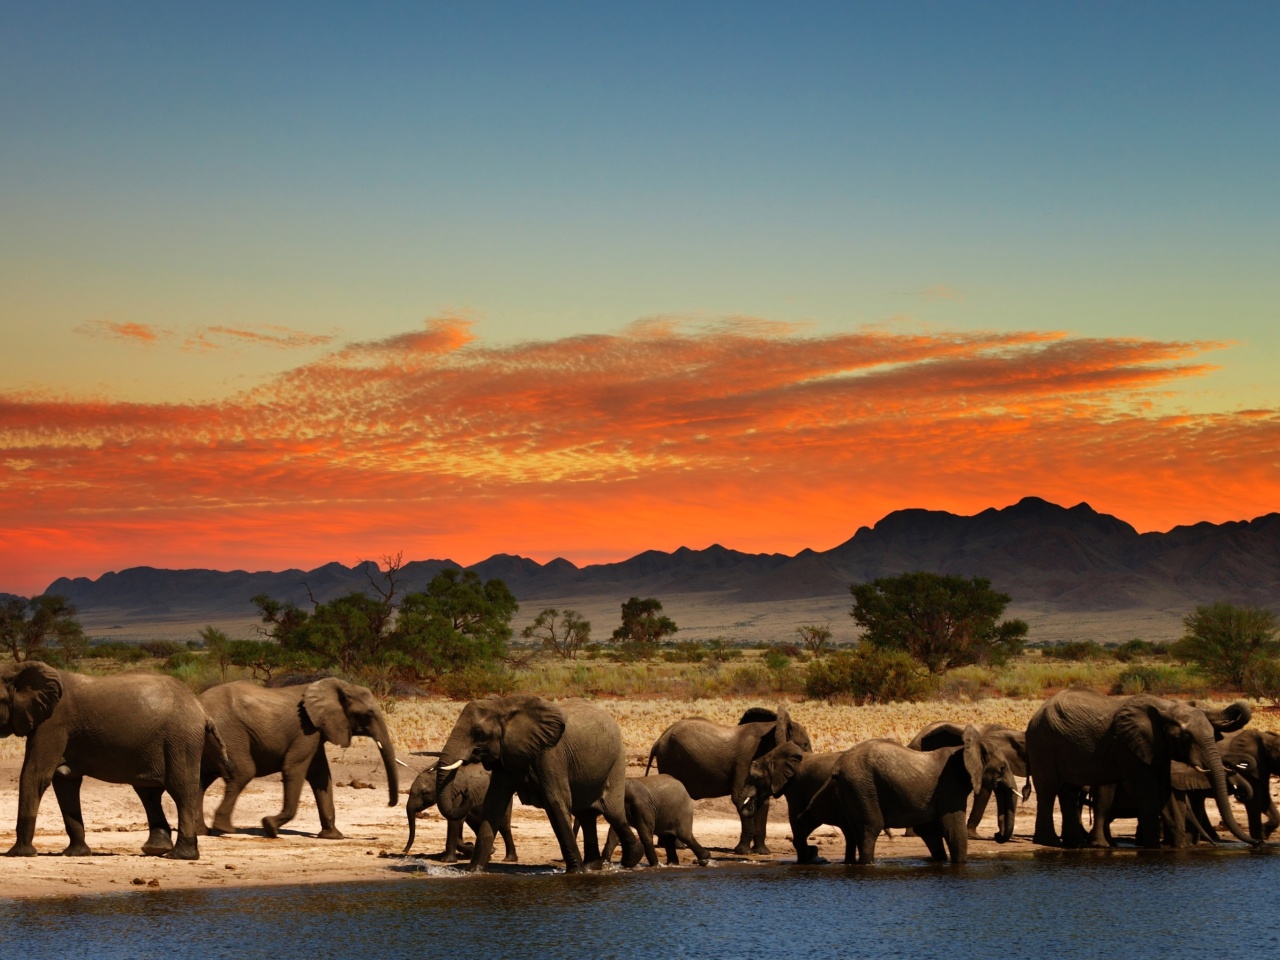 Herd of elephants Safari wallpaper 1280x960